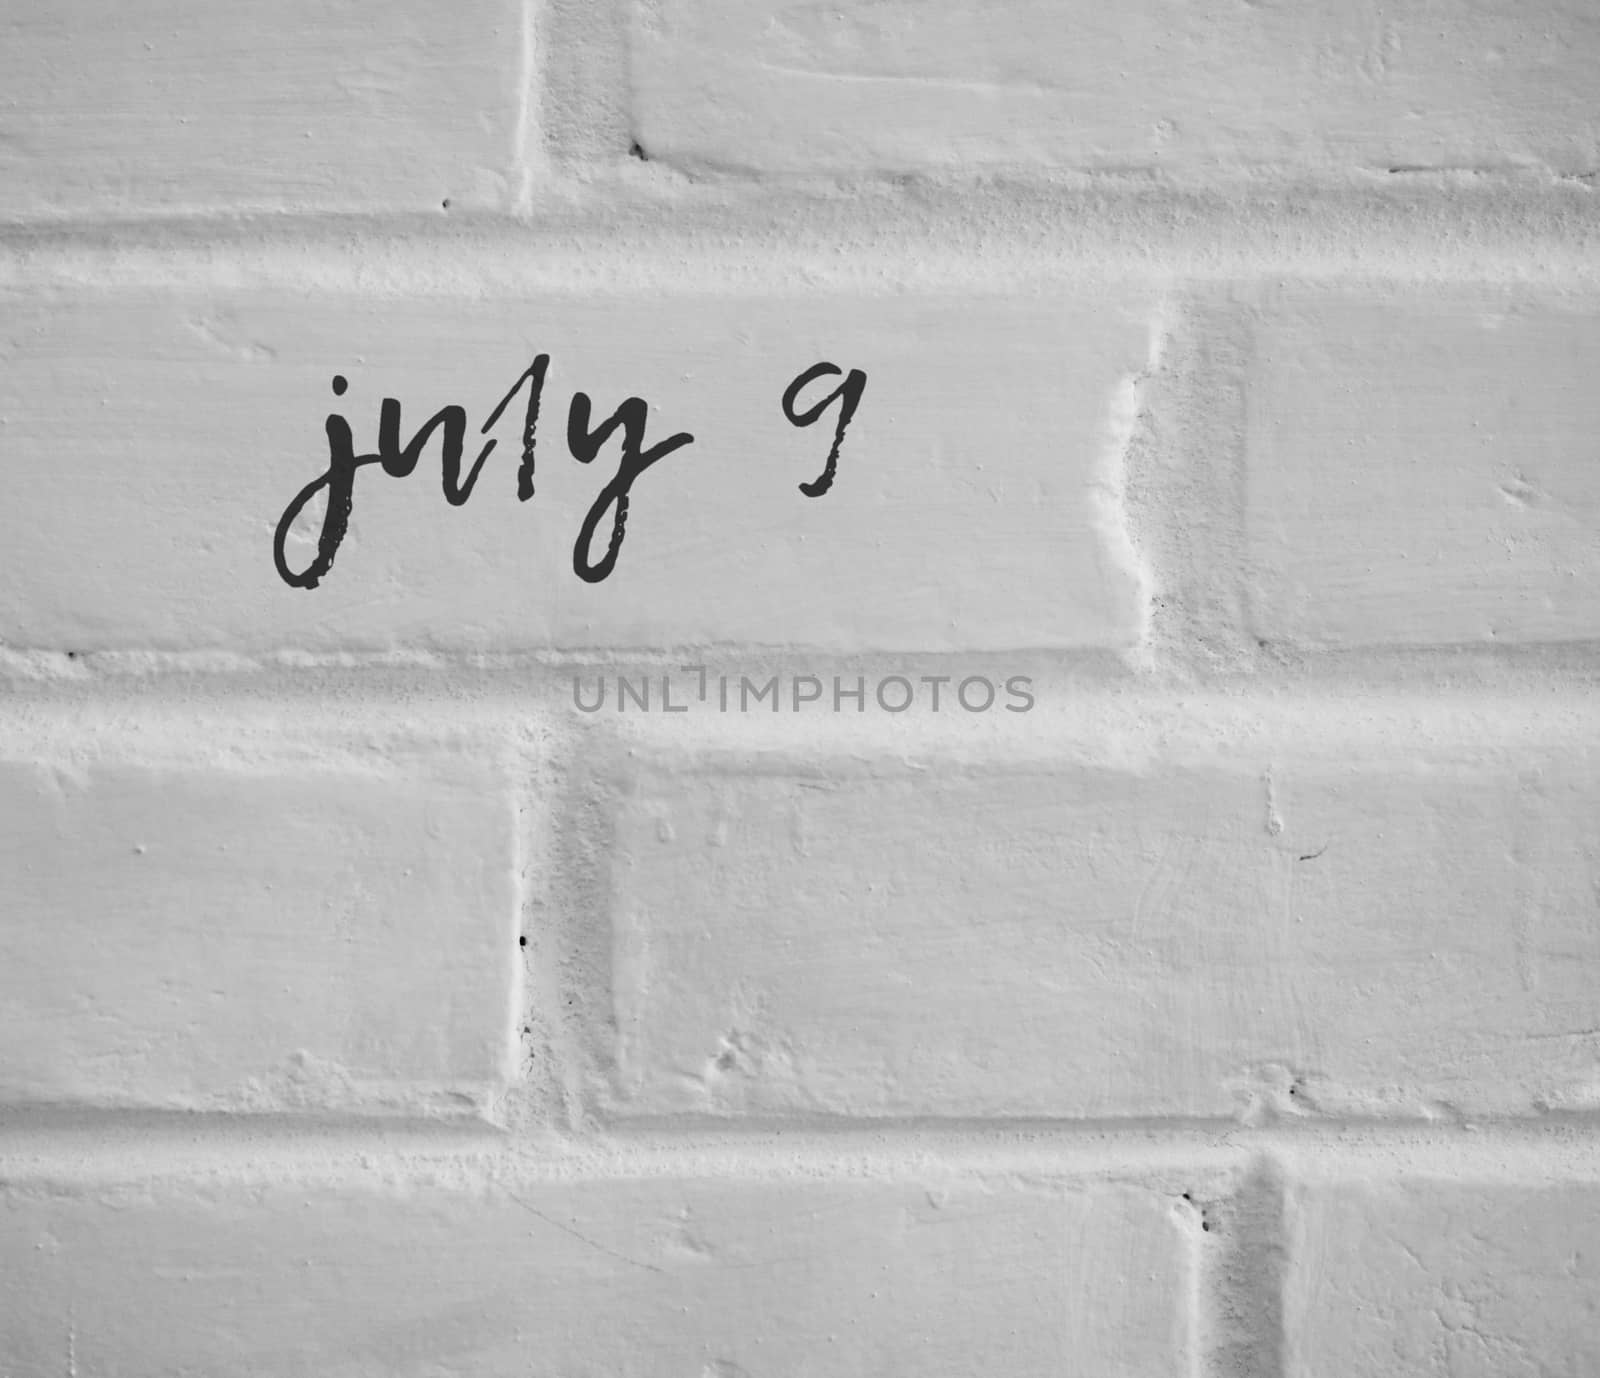 PHOTO OF july 9 WRITTEN ON WHITE PLAIN BRICK WALL